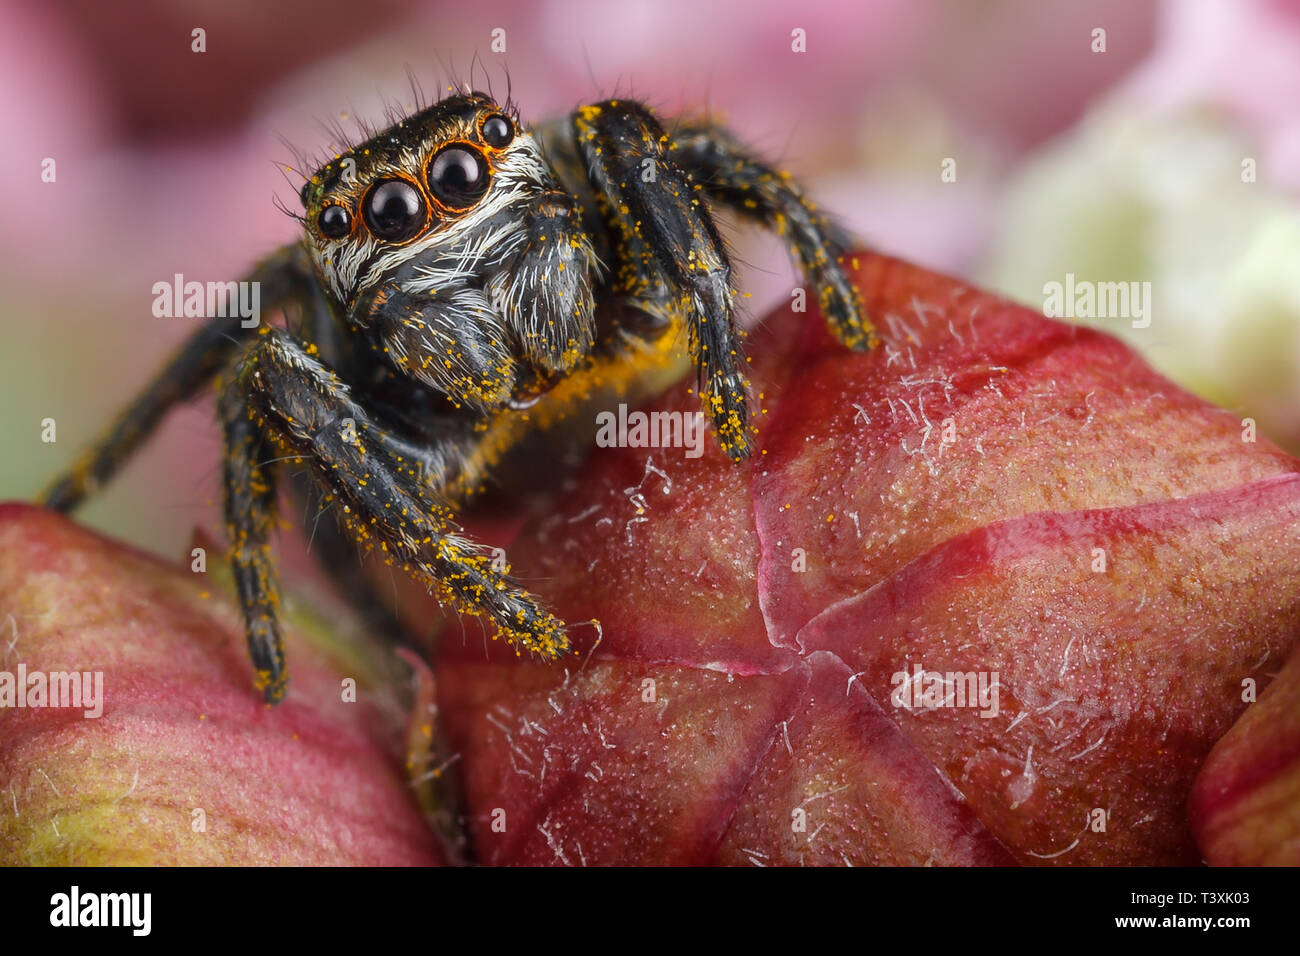 Jumping spider con giallo polen sulle gemme di colore rosso Foto Stock